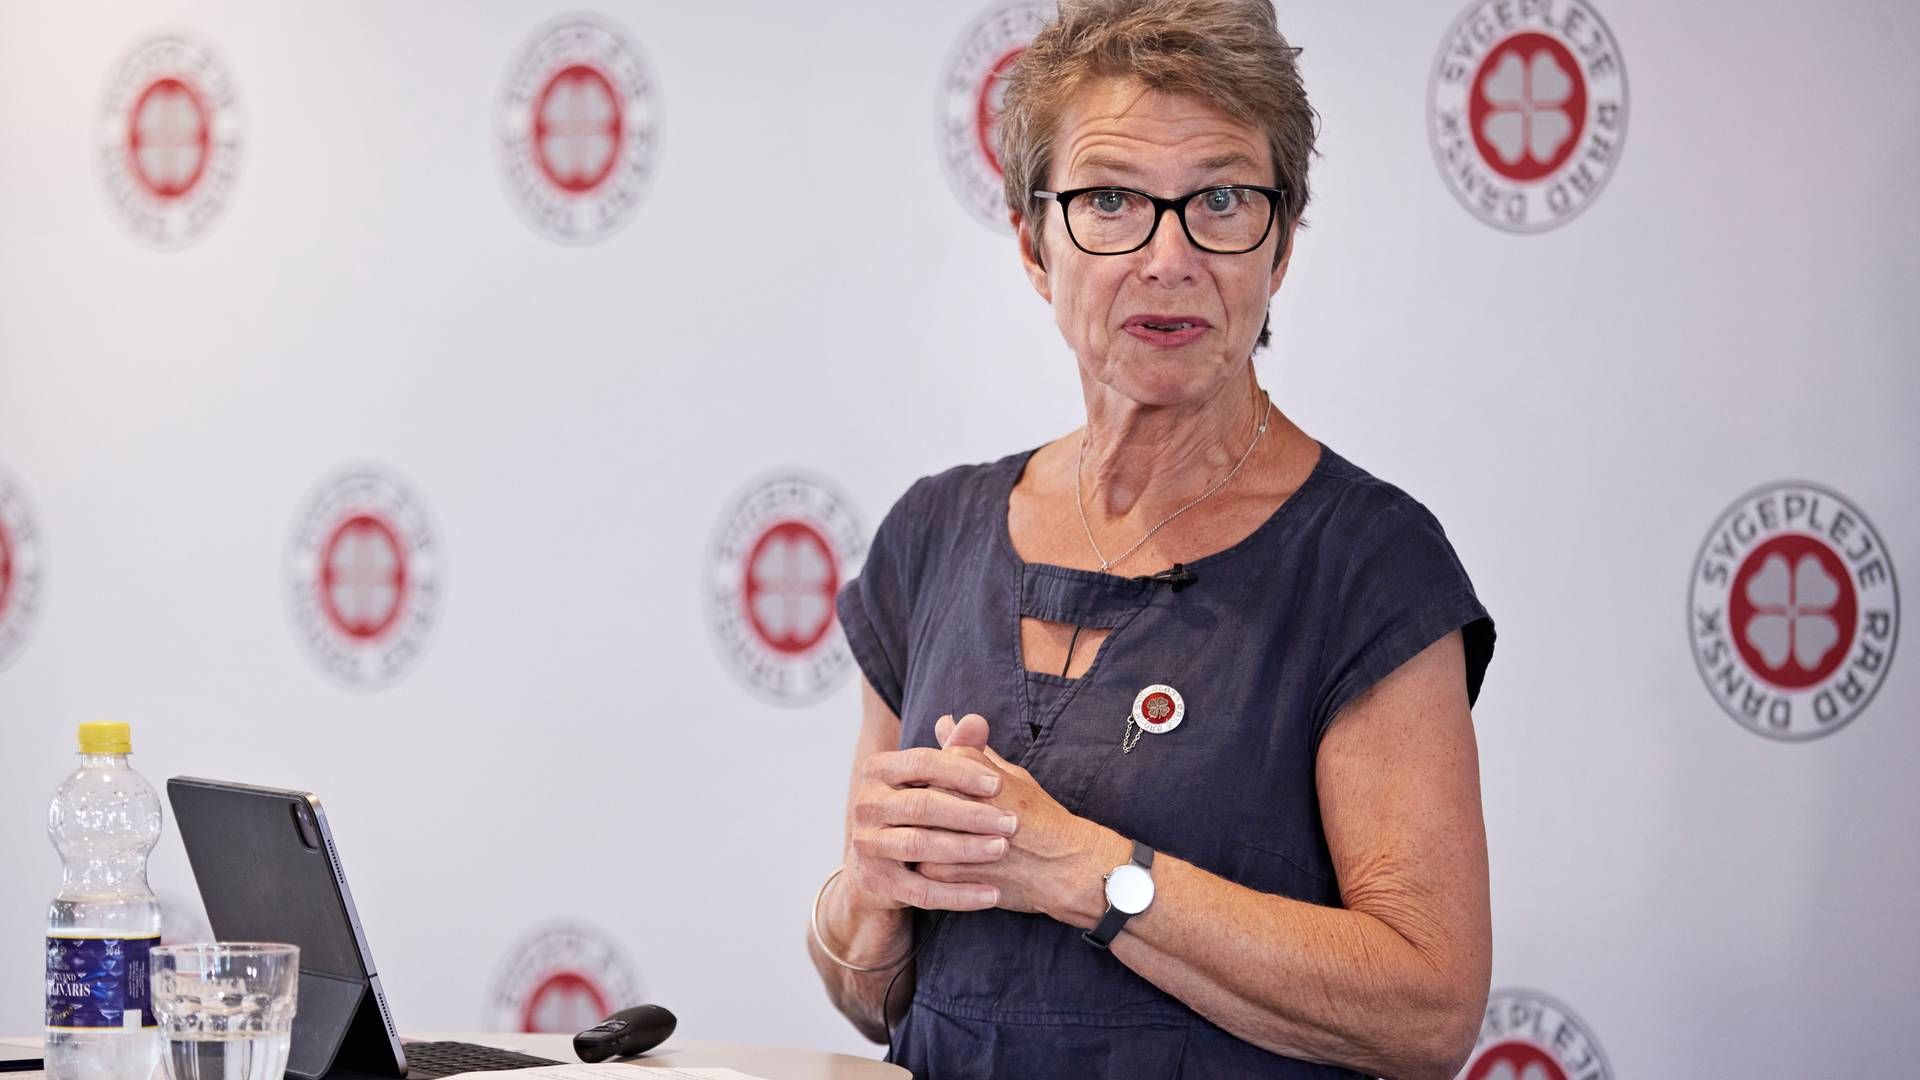 Dansk Sygeplejeråd skal have ny pressechef, da Lotte Dahlmann skifter til Danske Fysioterapeuter. | Foto: Jens Dresling/Ritzau Scanpix